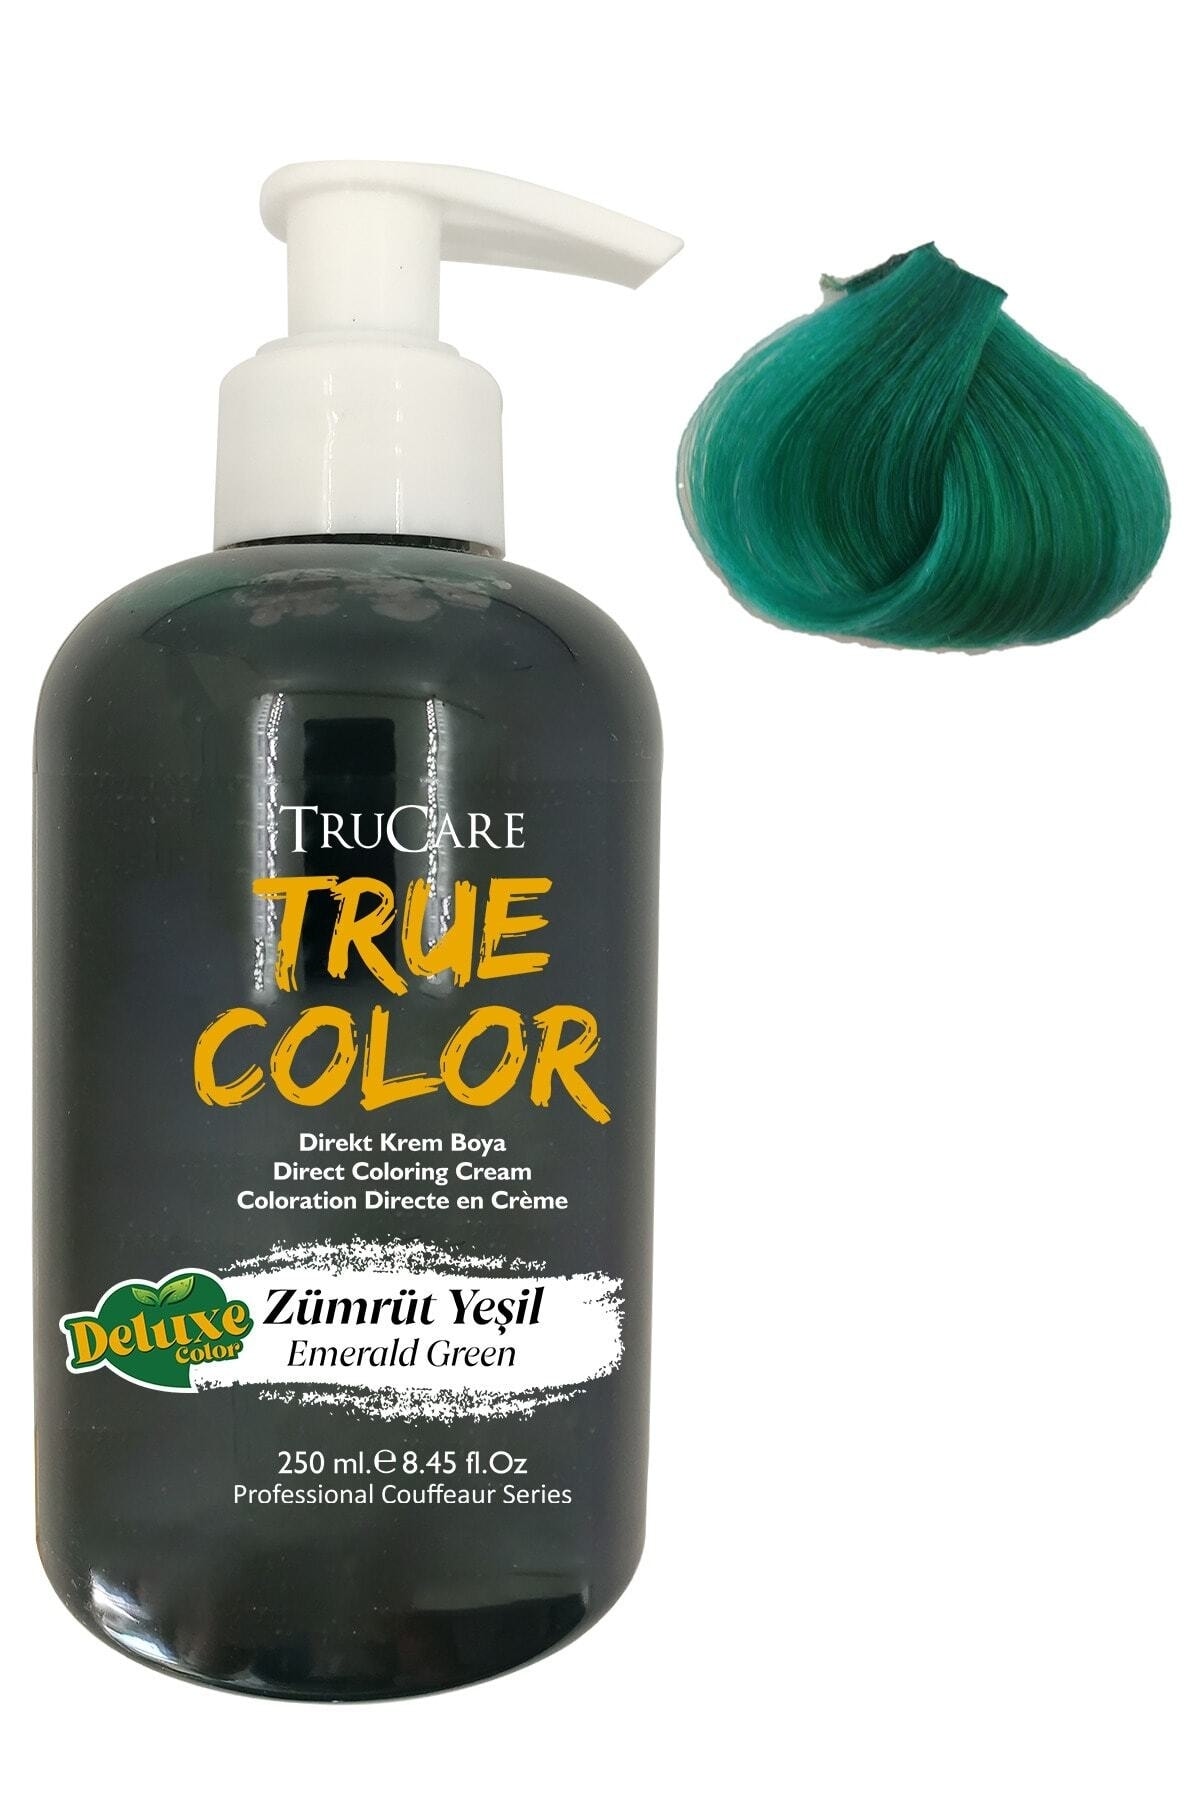 Trucare Truecolor Saç Boyası Zümrüt Yeşili 250 ml